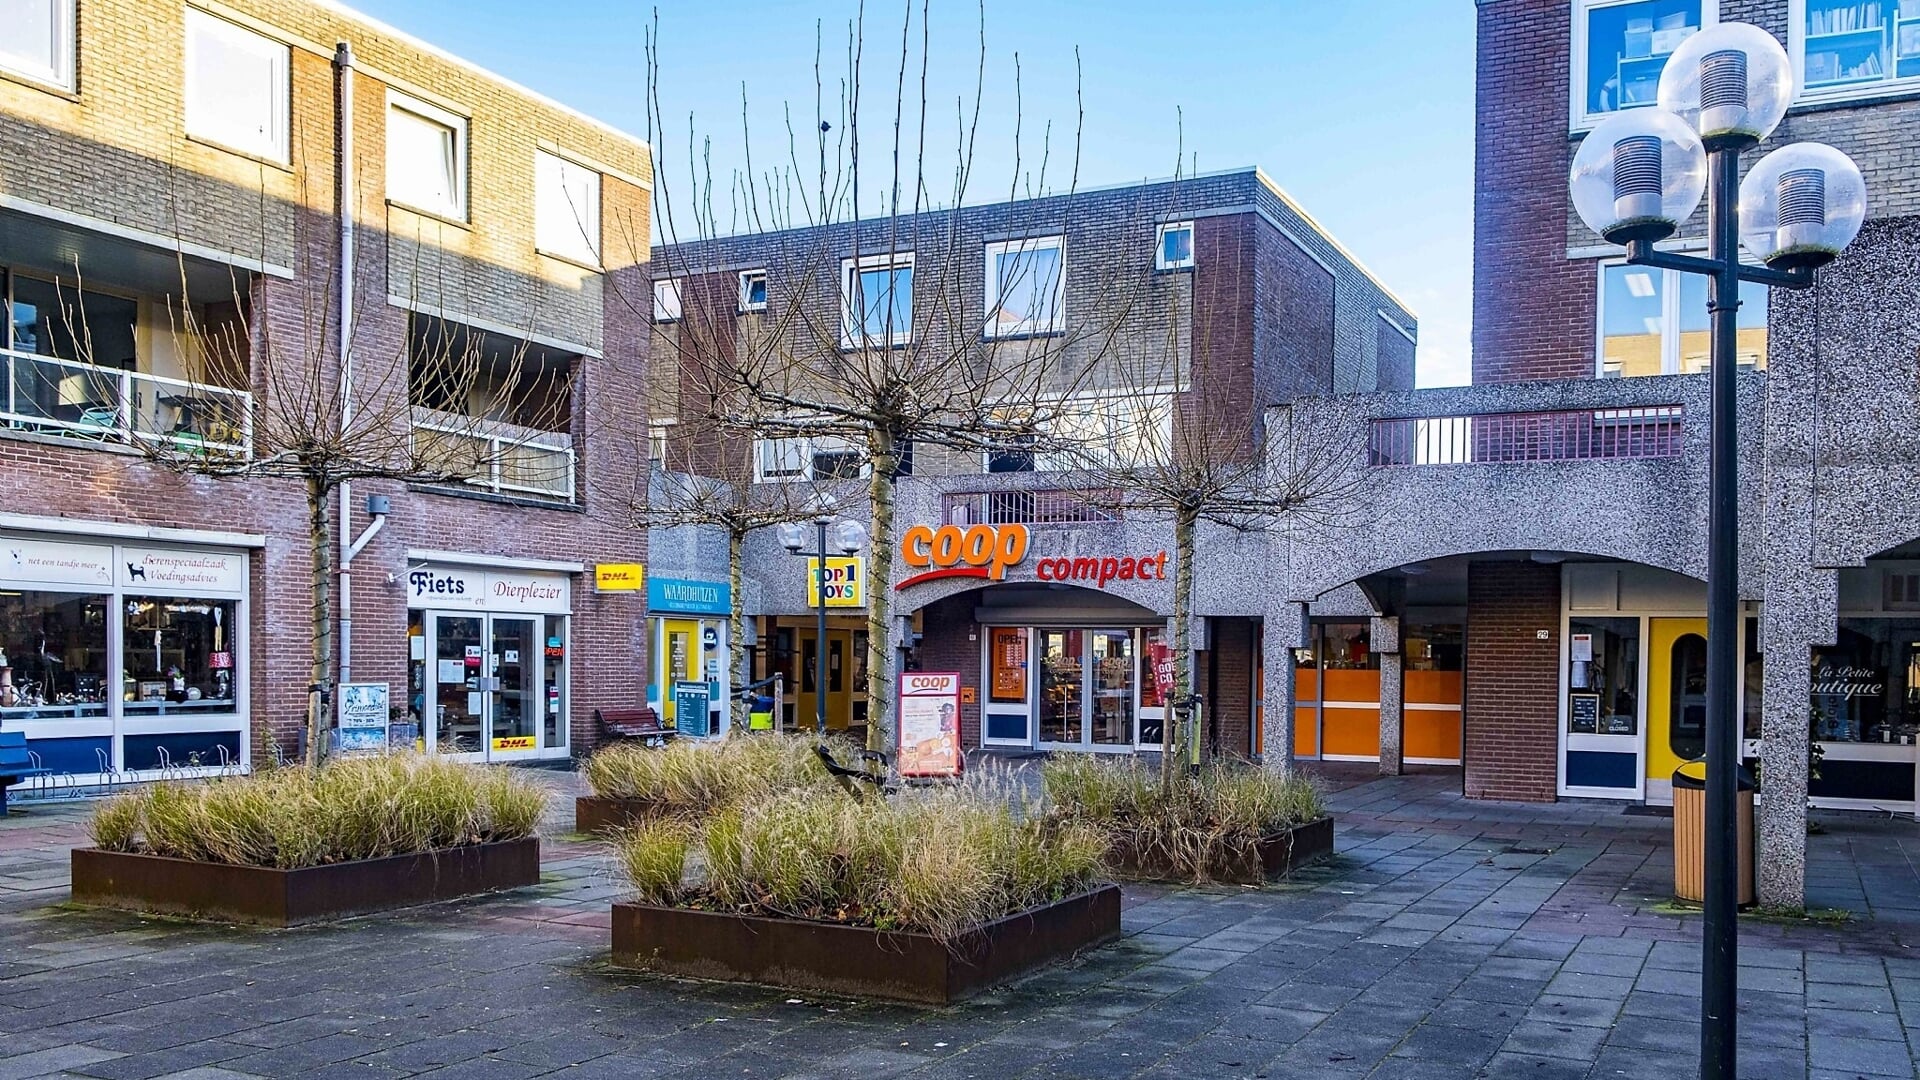 Winkelcentrum Waardhuizen met de inmiddels gesloten Coop-supermarkt.